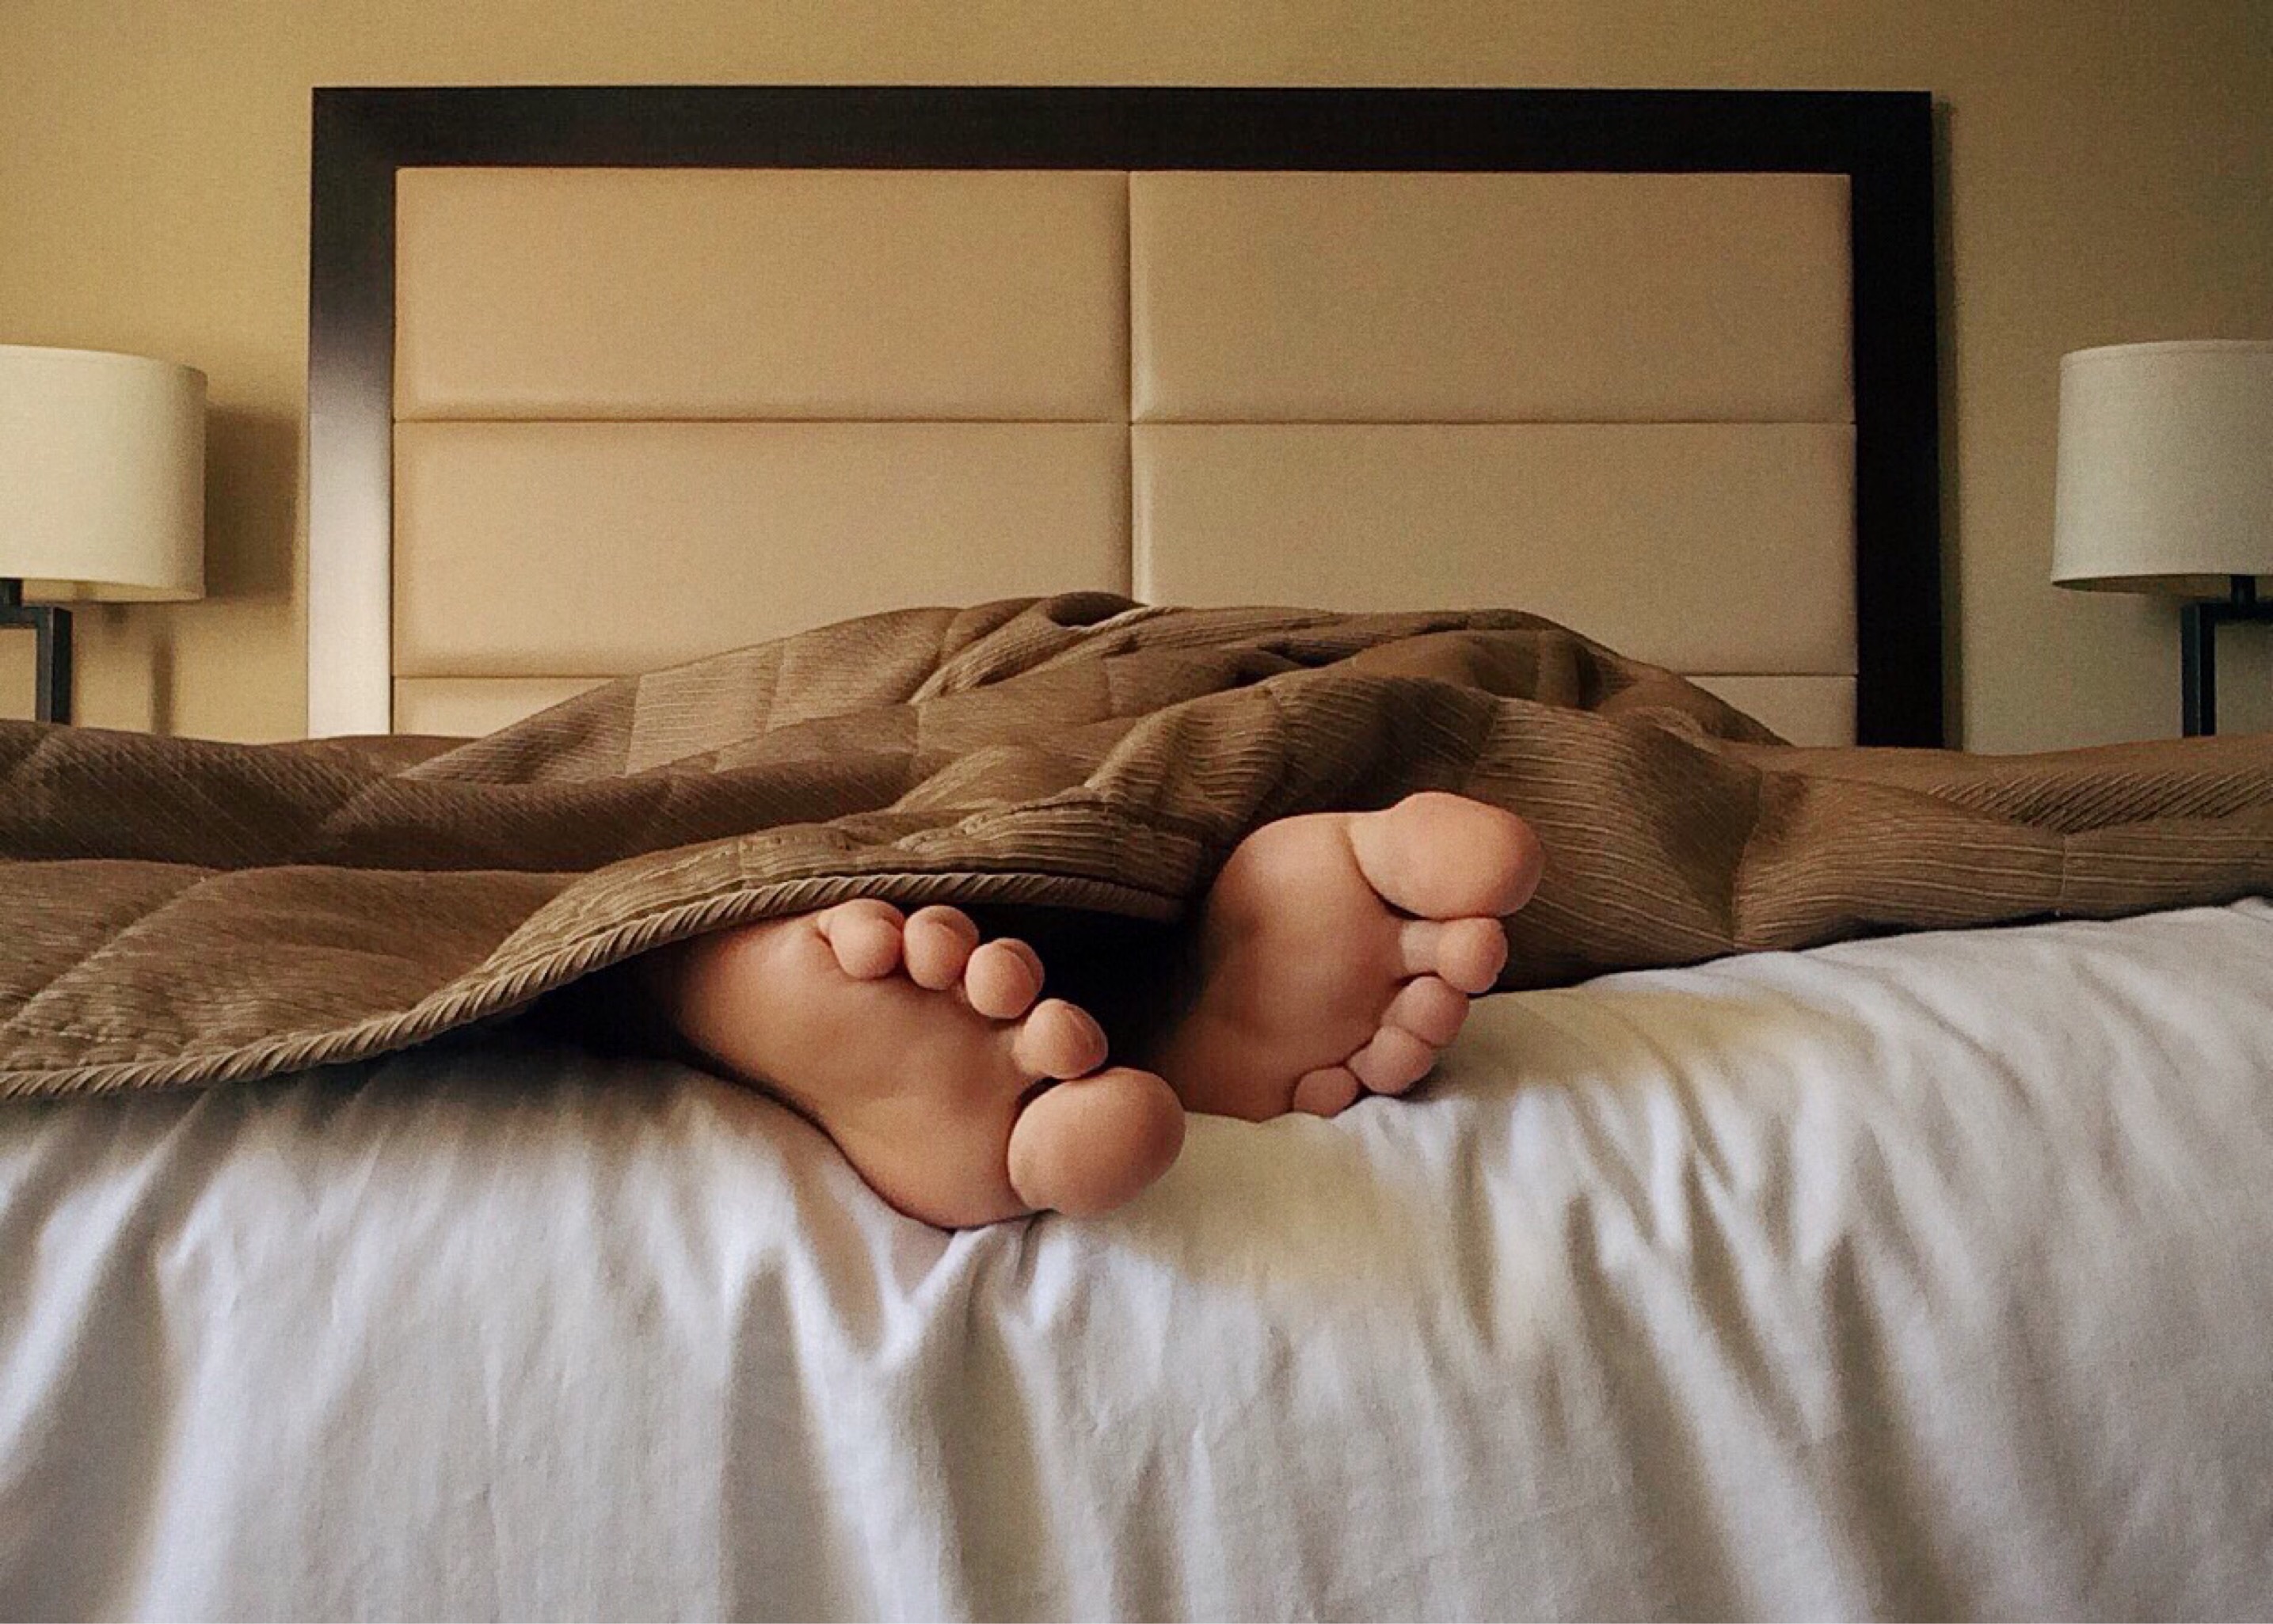 Спящие ноги жены. Человек в кровати. Спящия человек в кравате. Кровать.